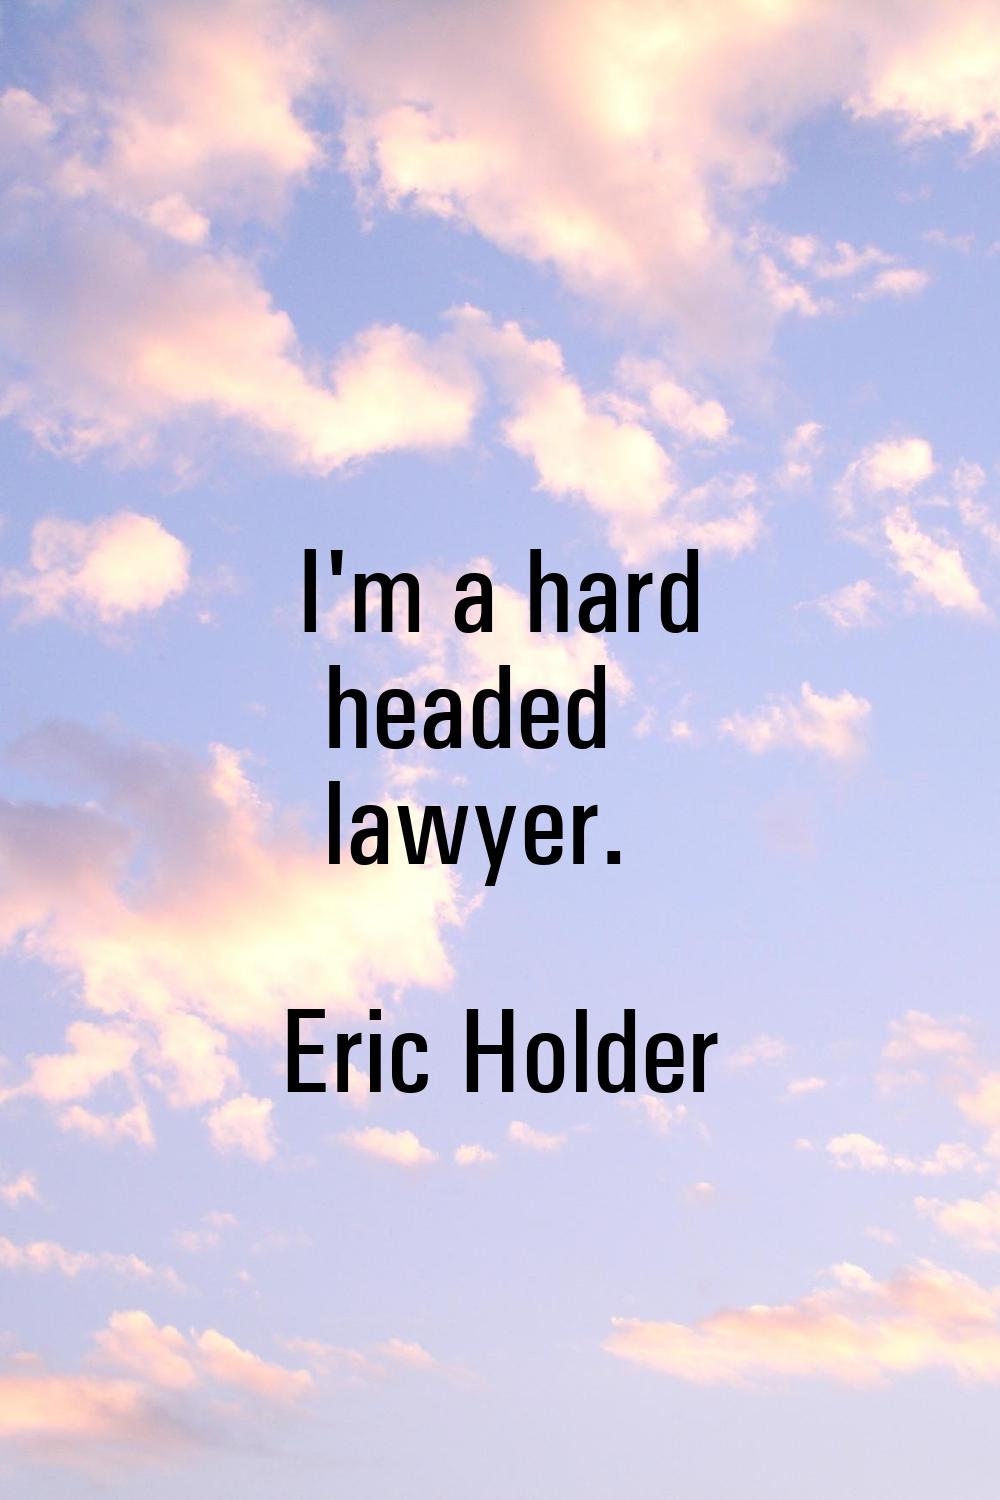 I'm a hard headed lawyer.